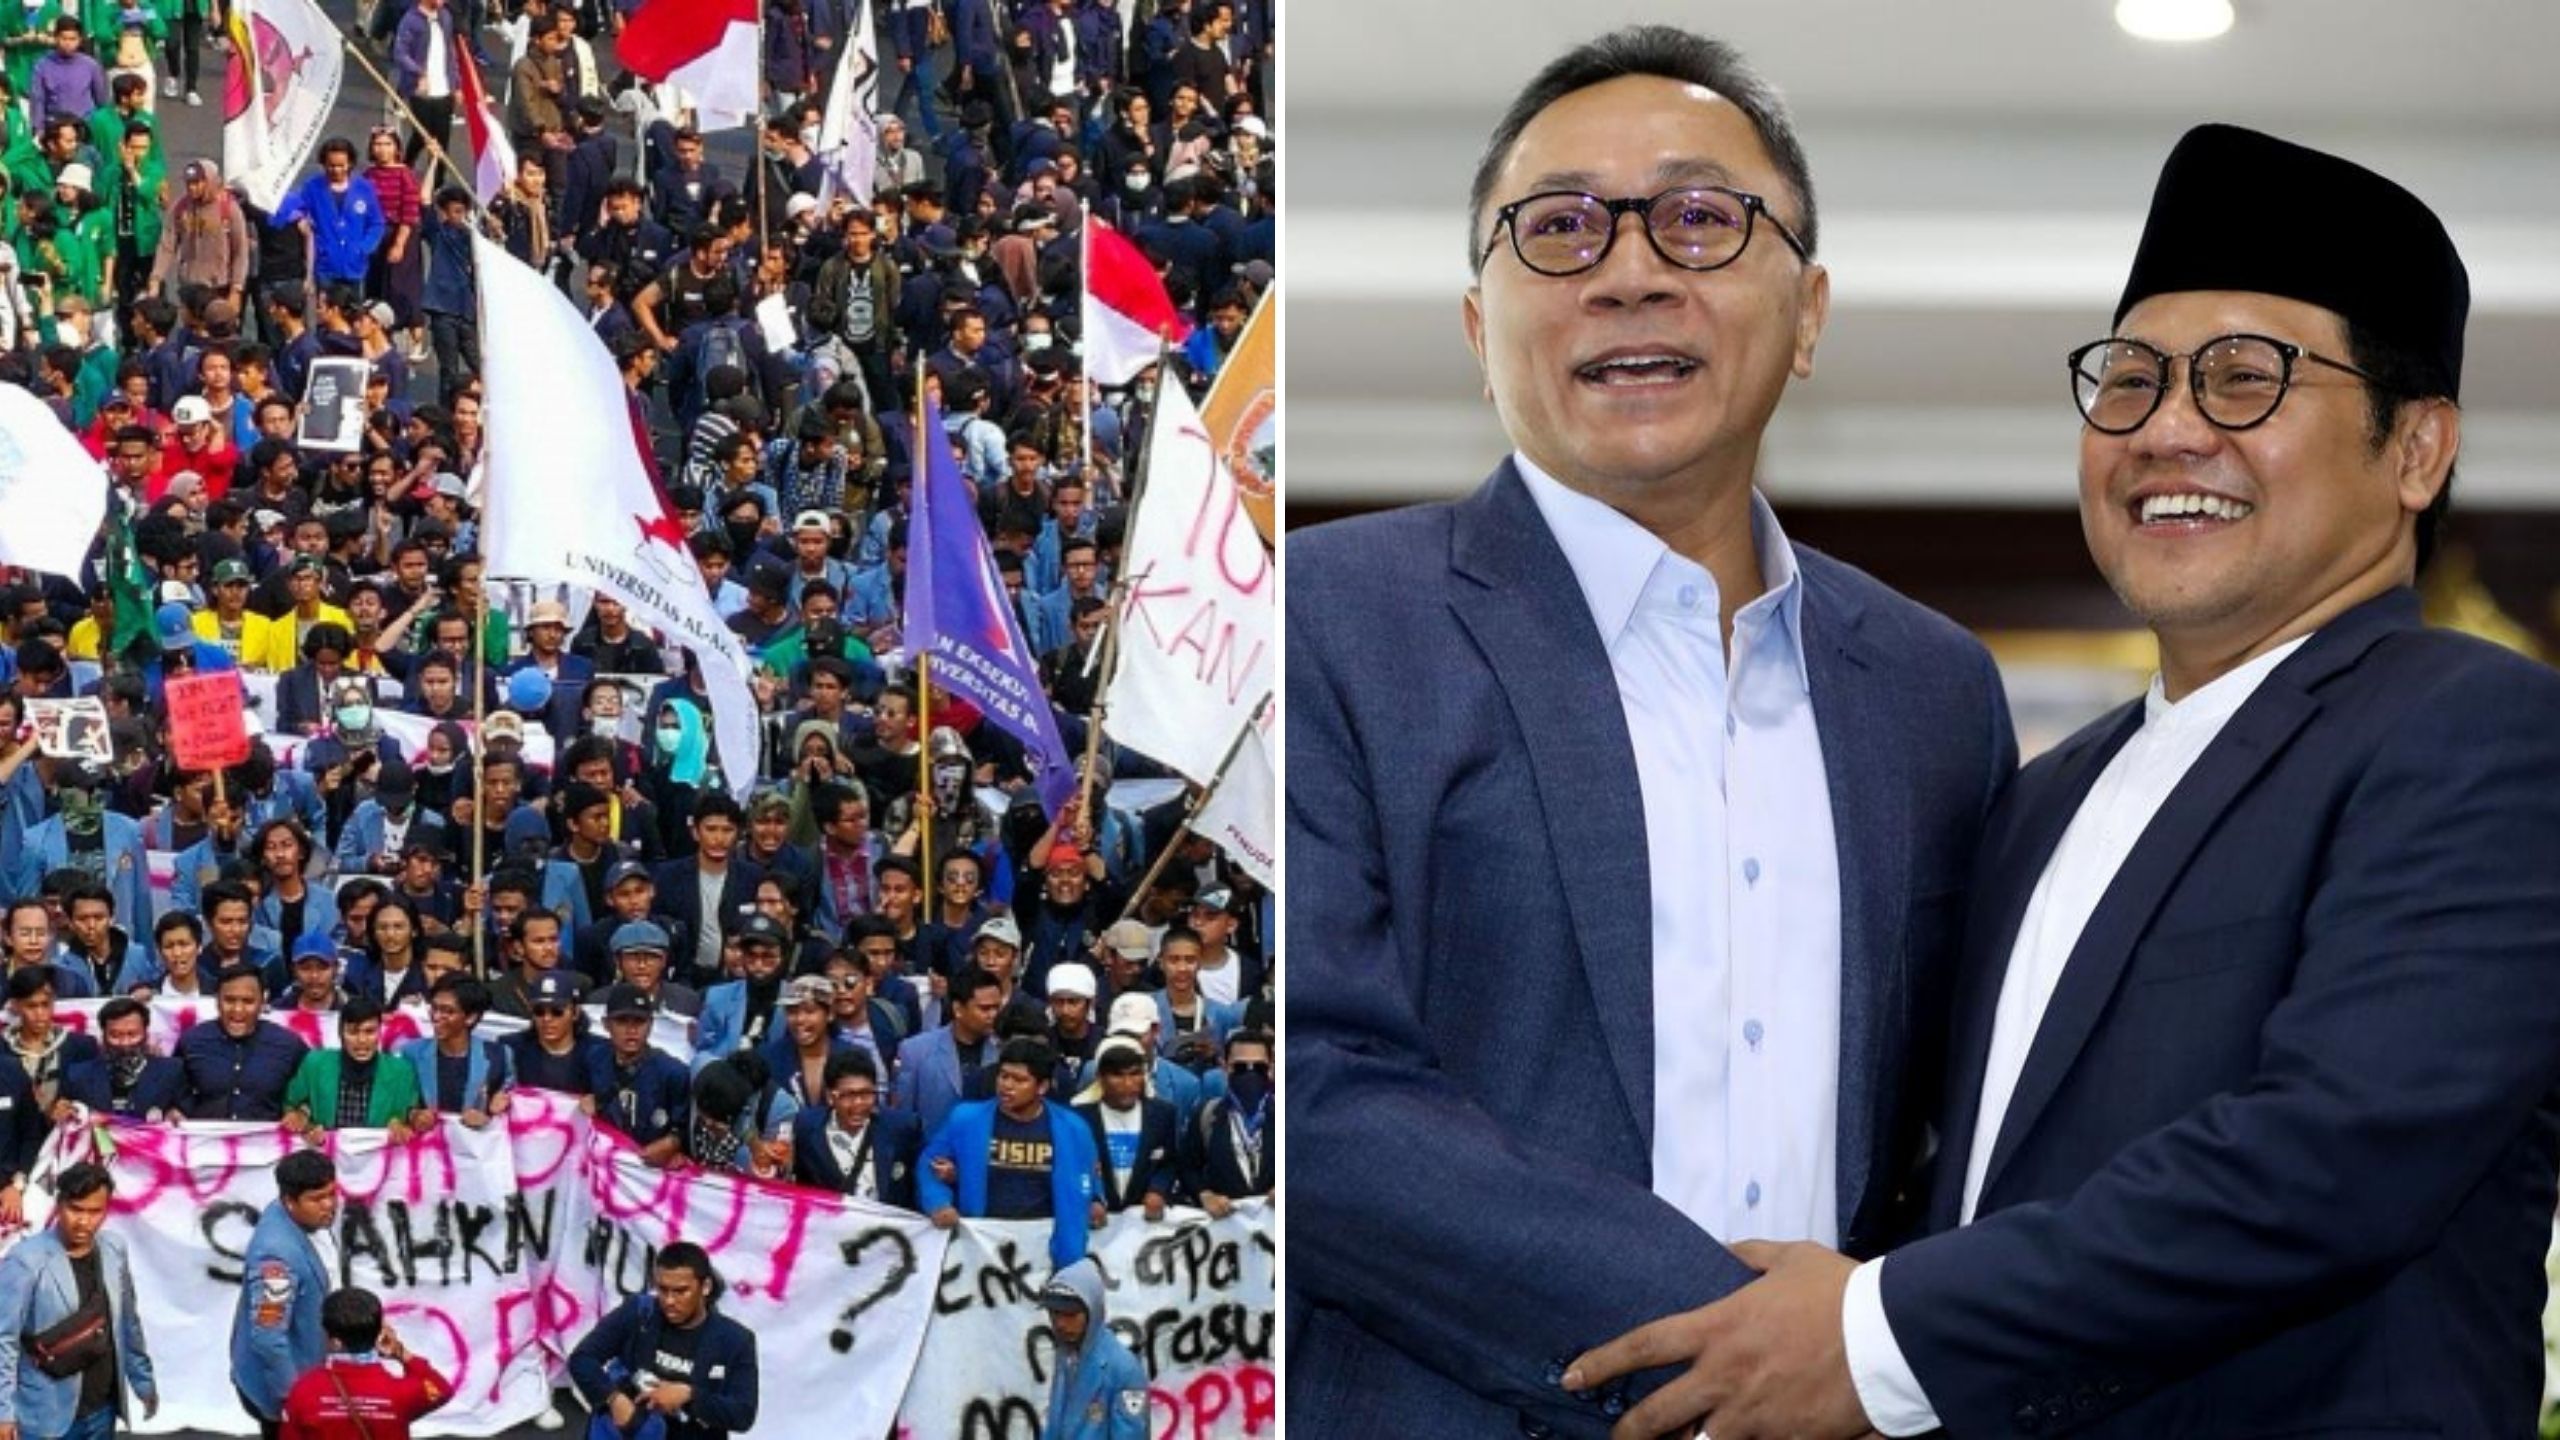 Mahasiswa Bakal Gelar Aksi Besar-besaran, Kemana Perginya Pembuat Wacana Jokowi 3 Periode?